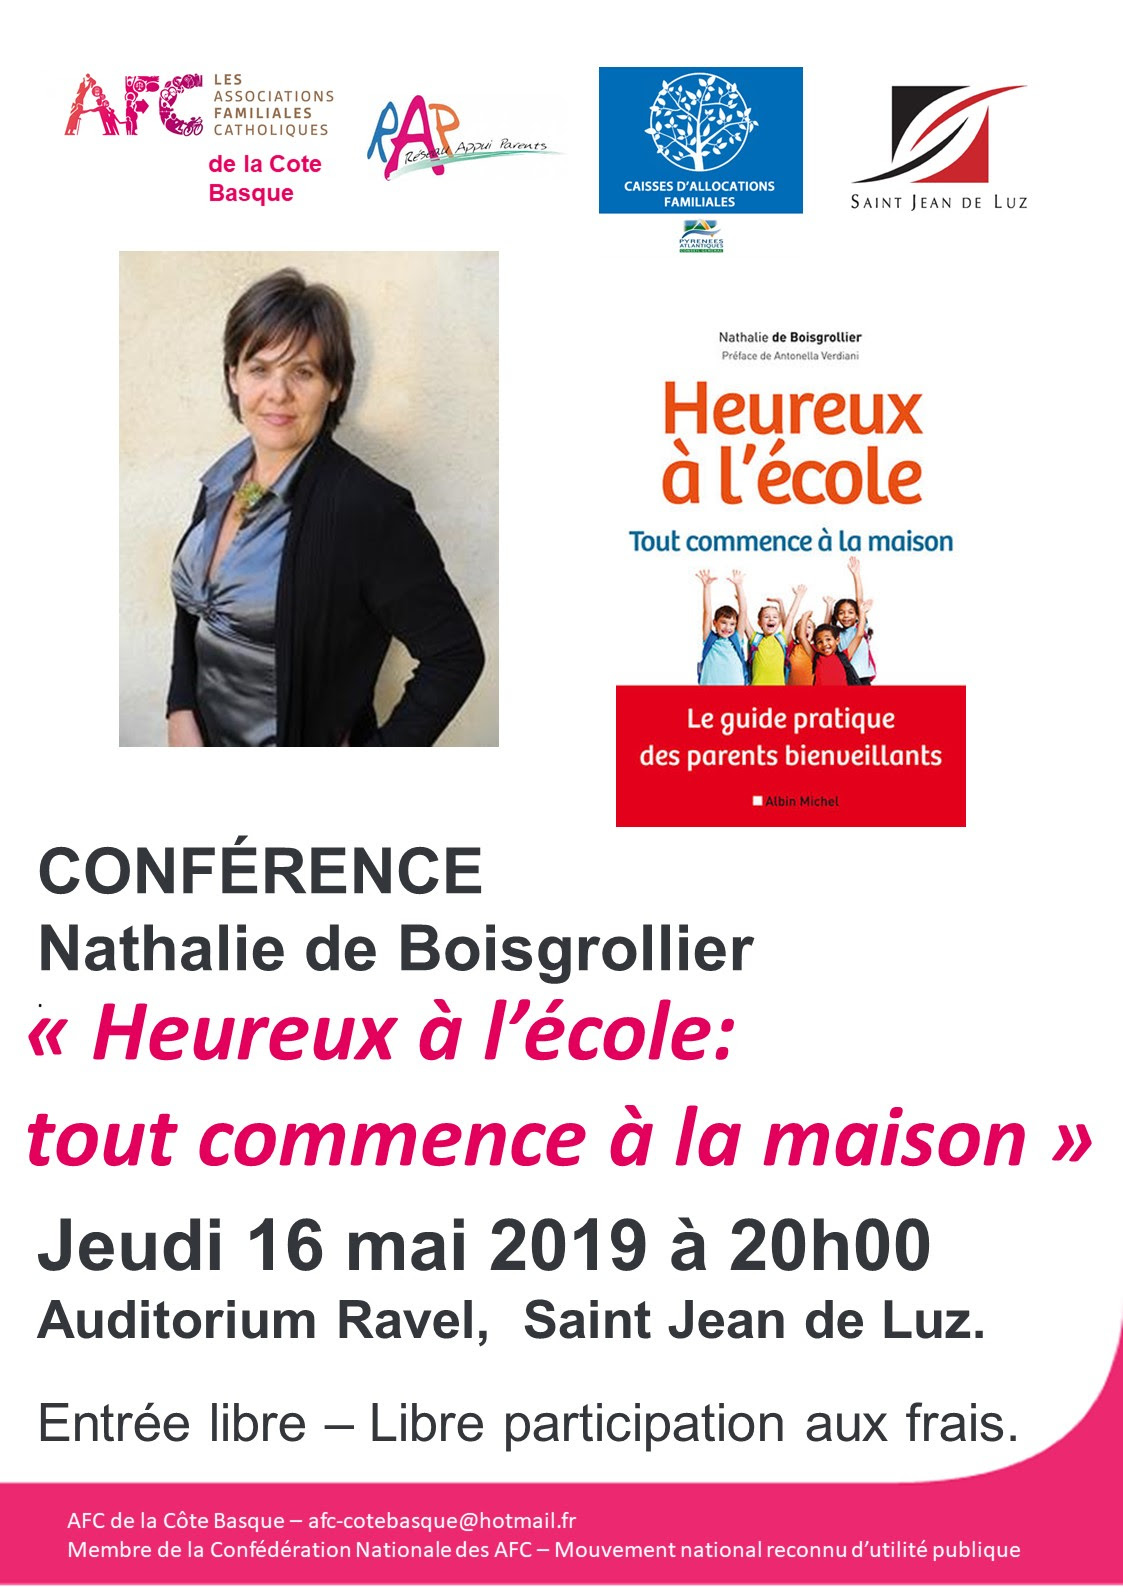 Conférence “Heureux à l’école” le 16 mai 2019 à Saint-Jean-de-Luz (64)